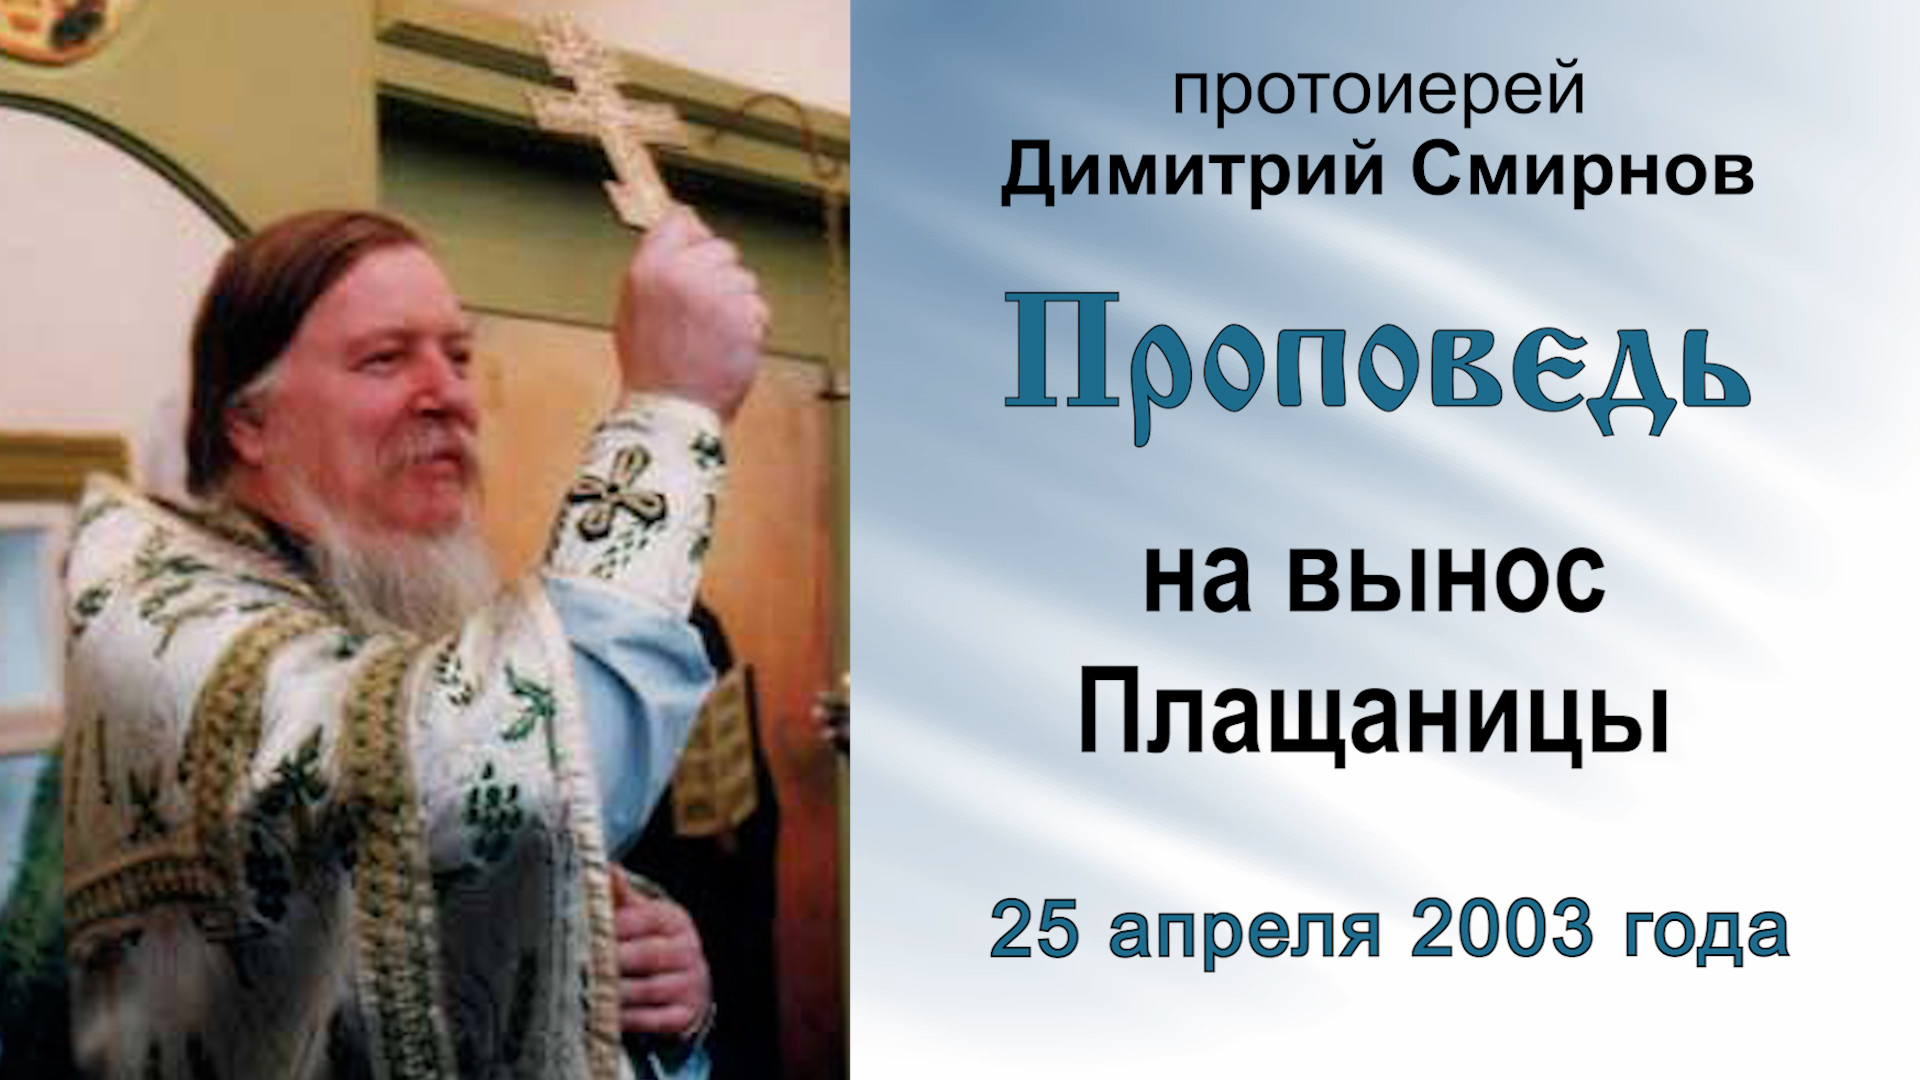 Проповедь на вынос Плащаницы (2003.04.25). Протоиерей Димитрий Смирнов